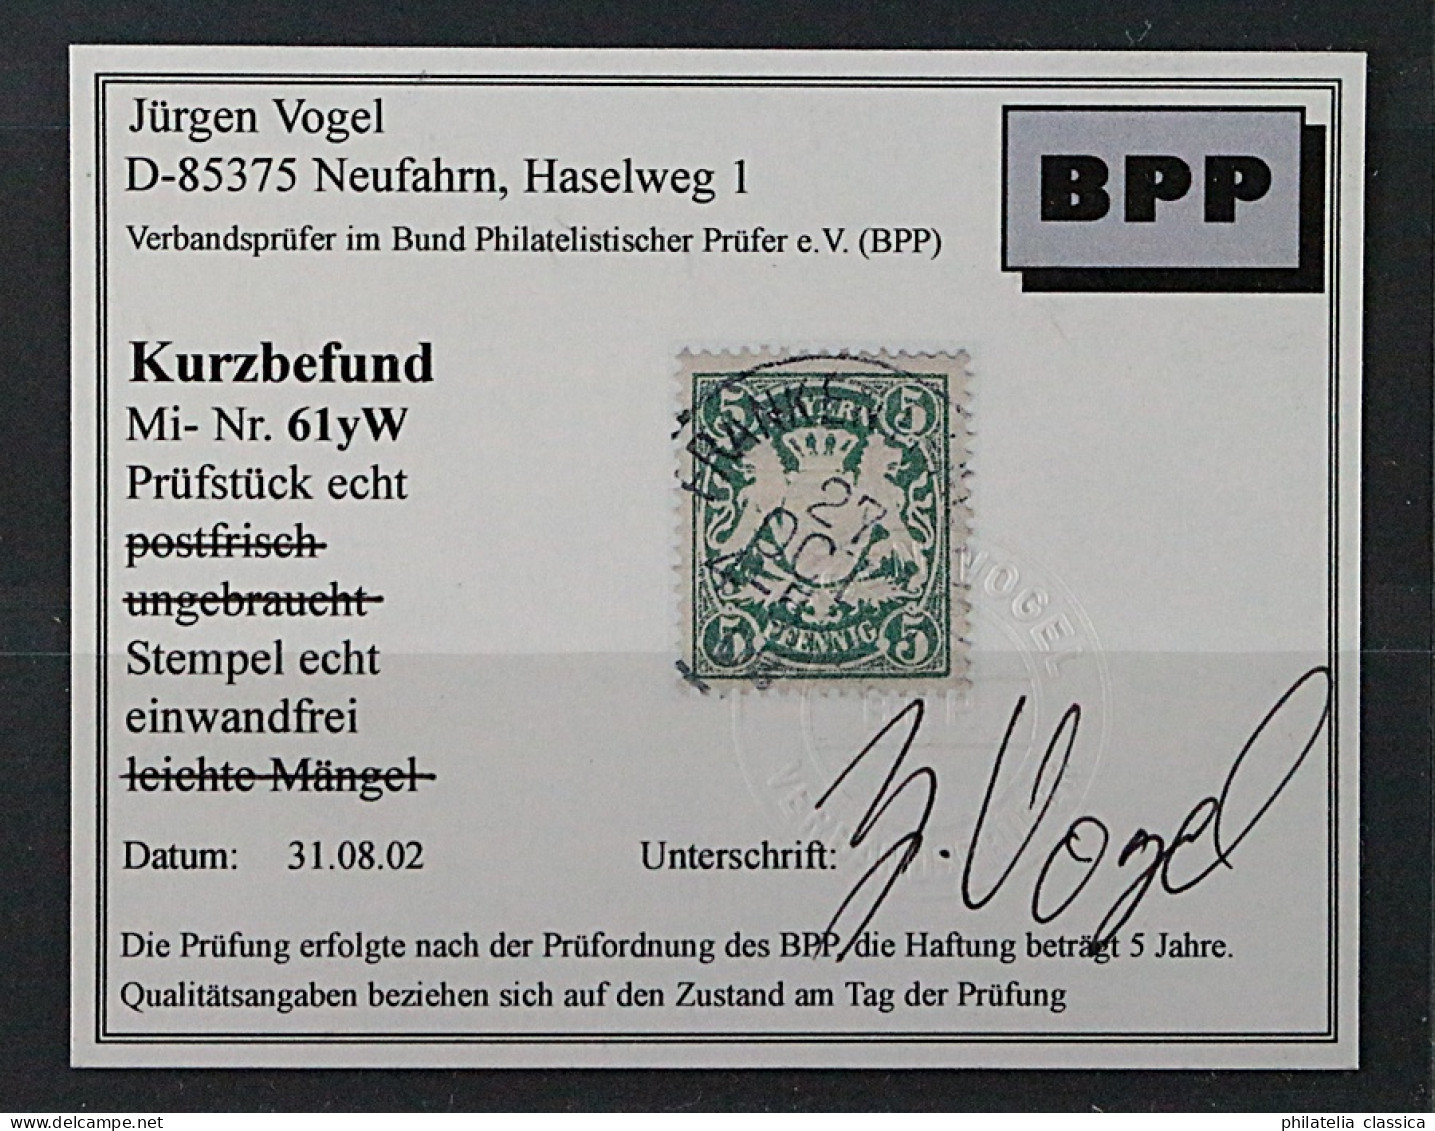 Bayern  61 Y W,  5 Pfg. Wasserzeichen 3 Statt 4, Fotobefund, SELTEN, KW 450,- € - Gebraucht